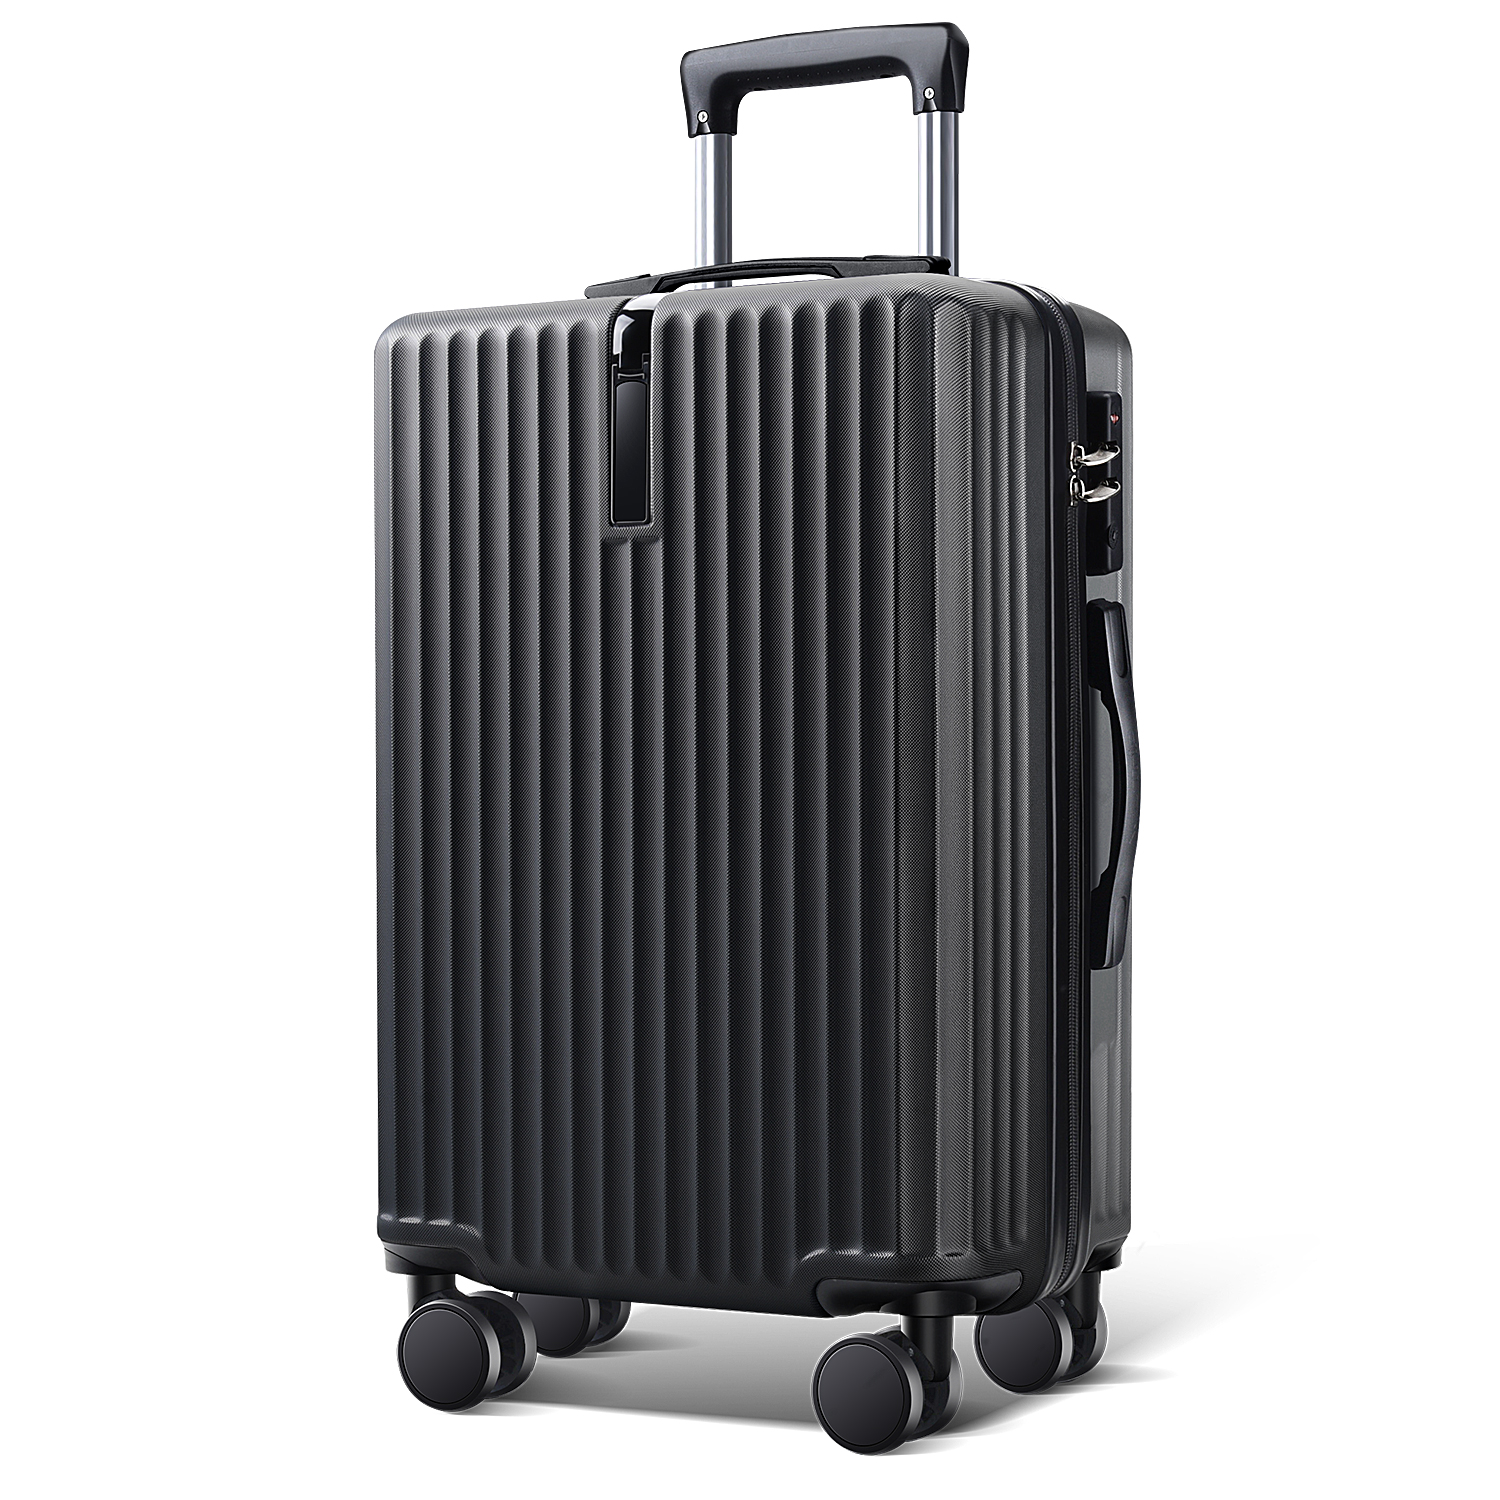 スーツケース 28インチ スーツケース キャリーケース キャリーバッグ 3カラー選ぶ S M Lサイズ 3-5日用 泊まる 軽量設計 大容量 海外旅行  GOTOトラベル 旅行